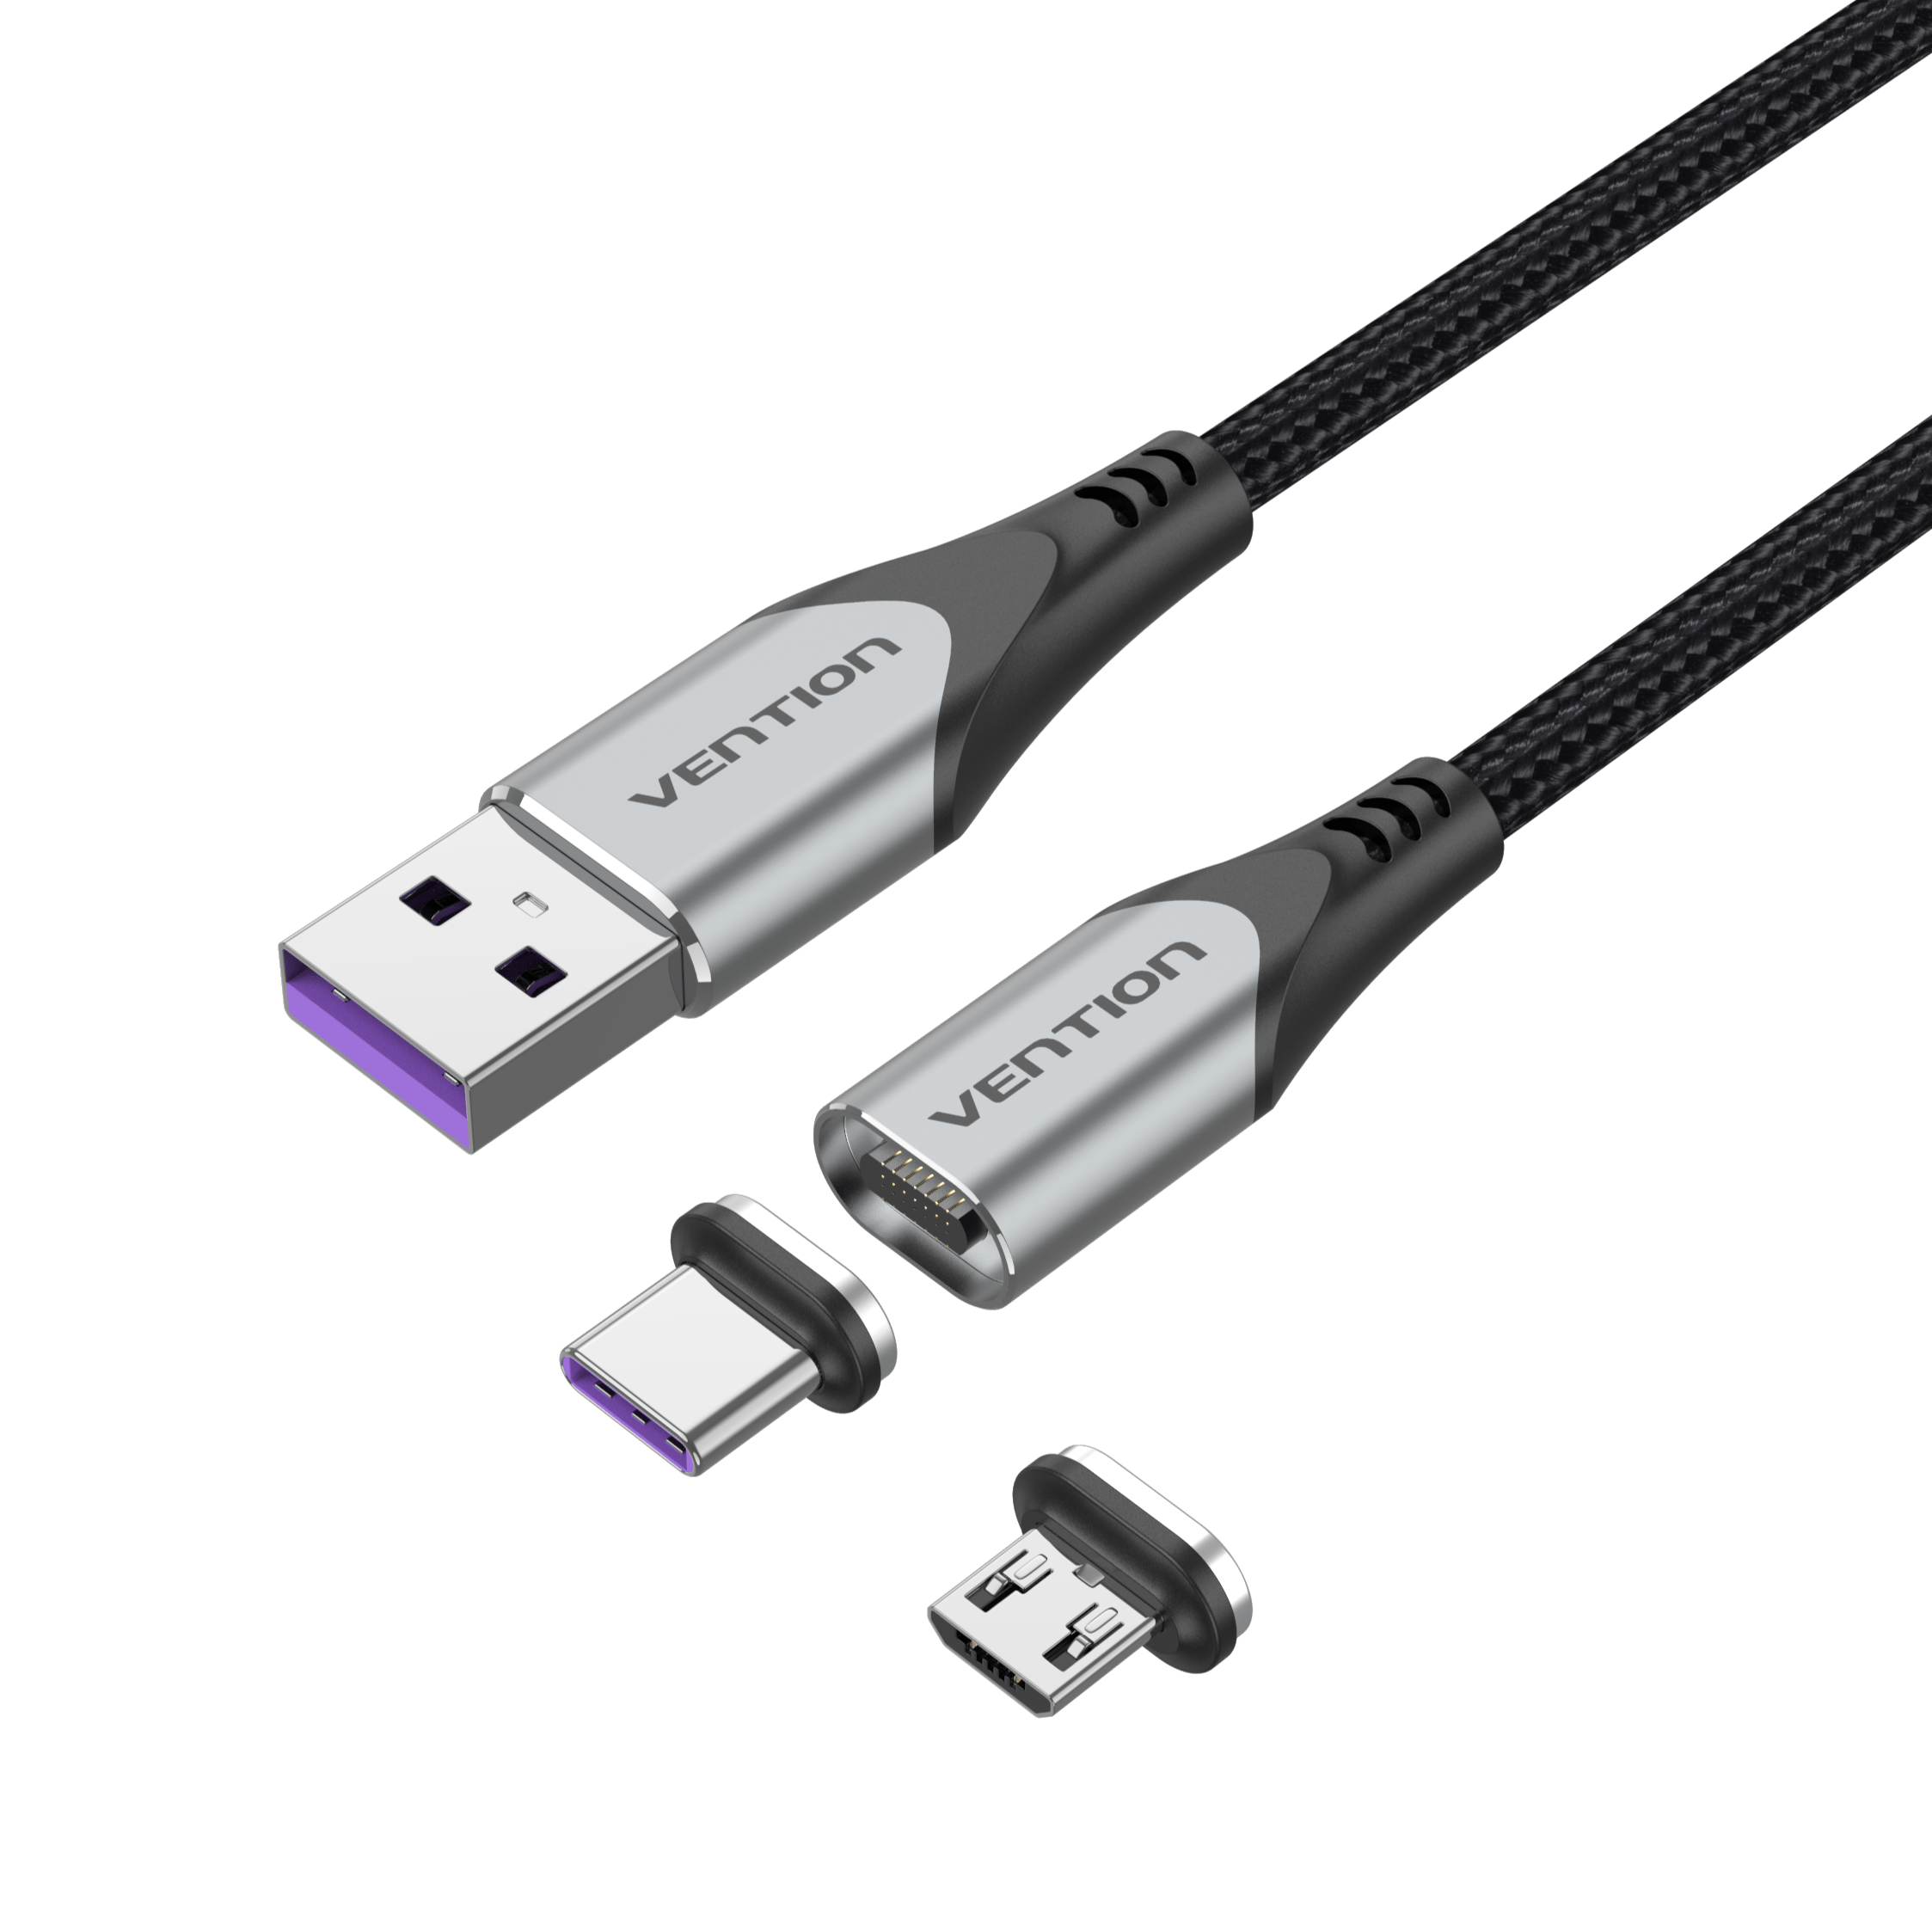 Cable de carga magnética 5A Cable de carga rápida USB tipo C Cable  magnético Micro USB Cable de carga de datos Cable de teléfono móvil Cable  USB